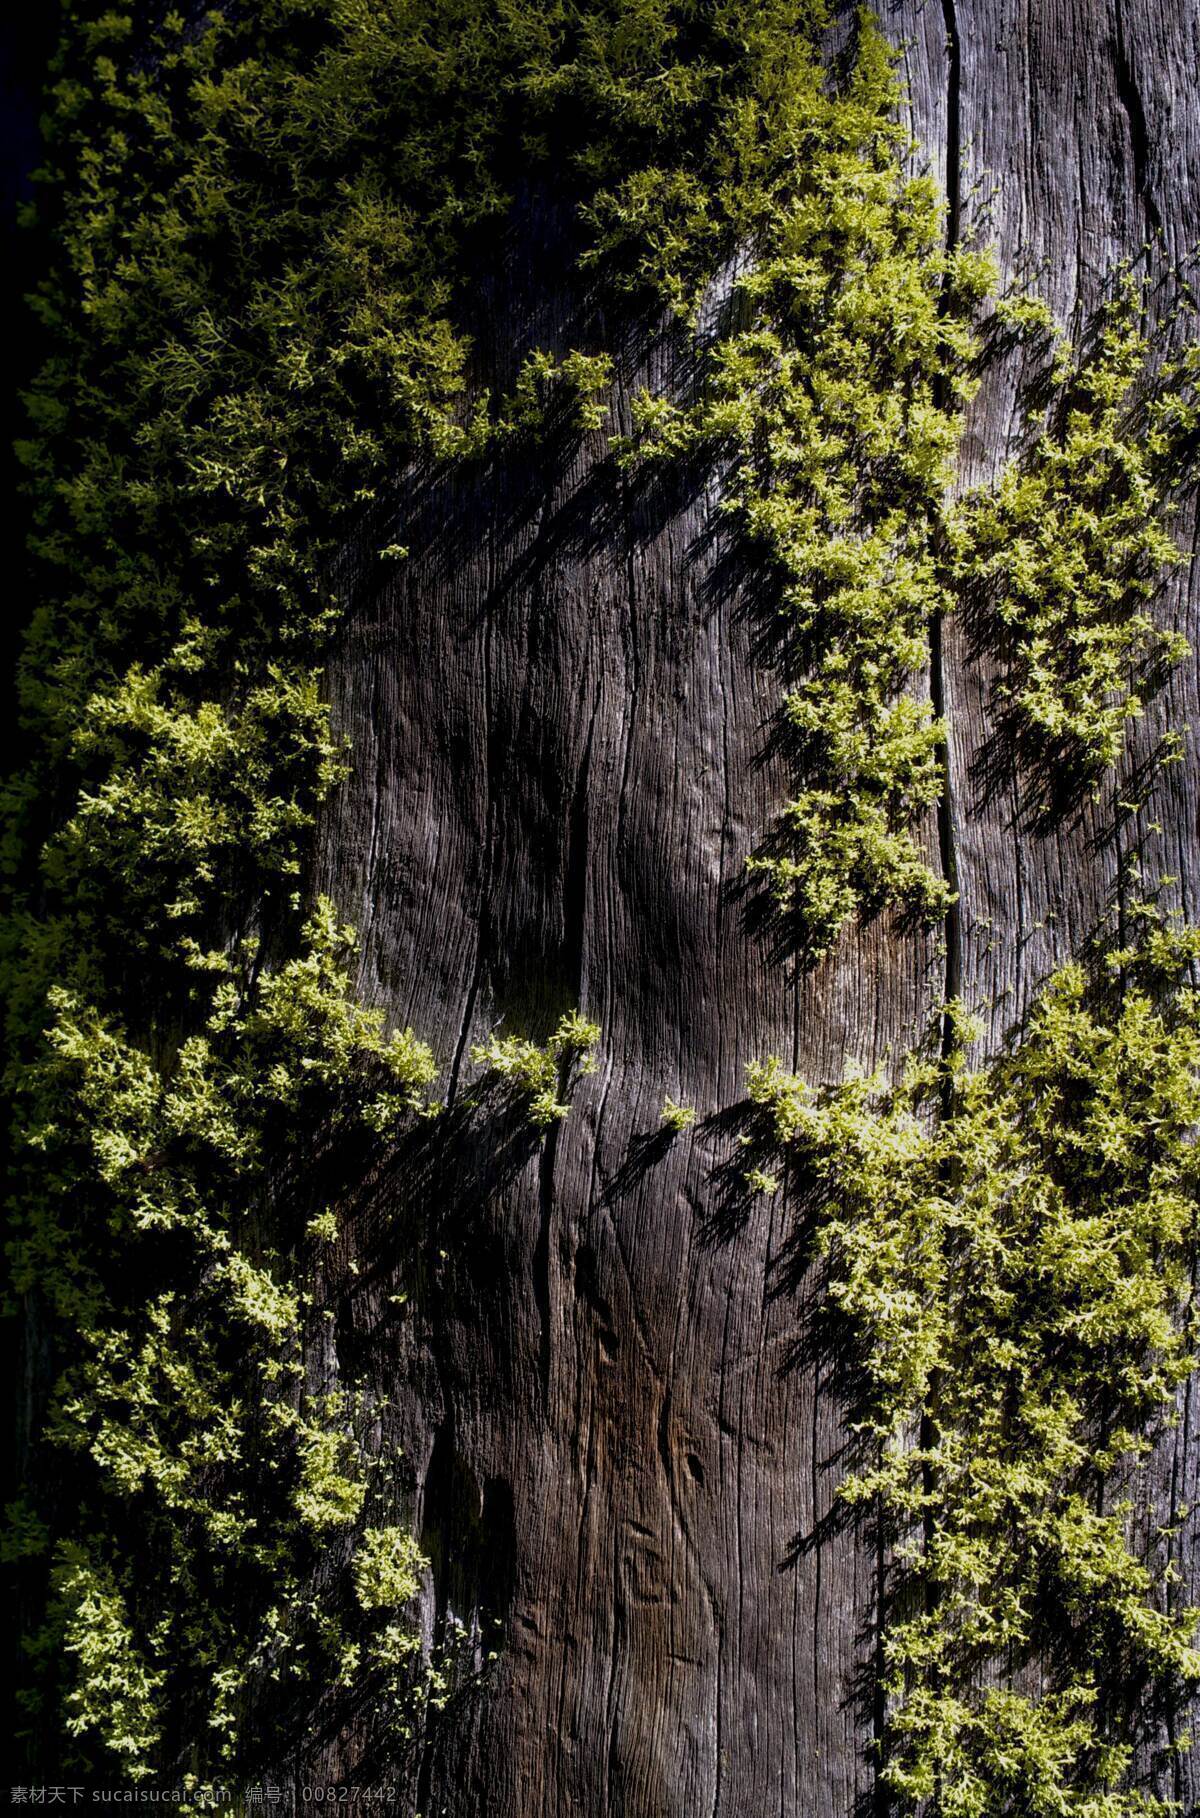 青苔 苔藓 潮湿 木板 背景 深木色 木头 纹理 森林 摄影图 自然景观 自然风景